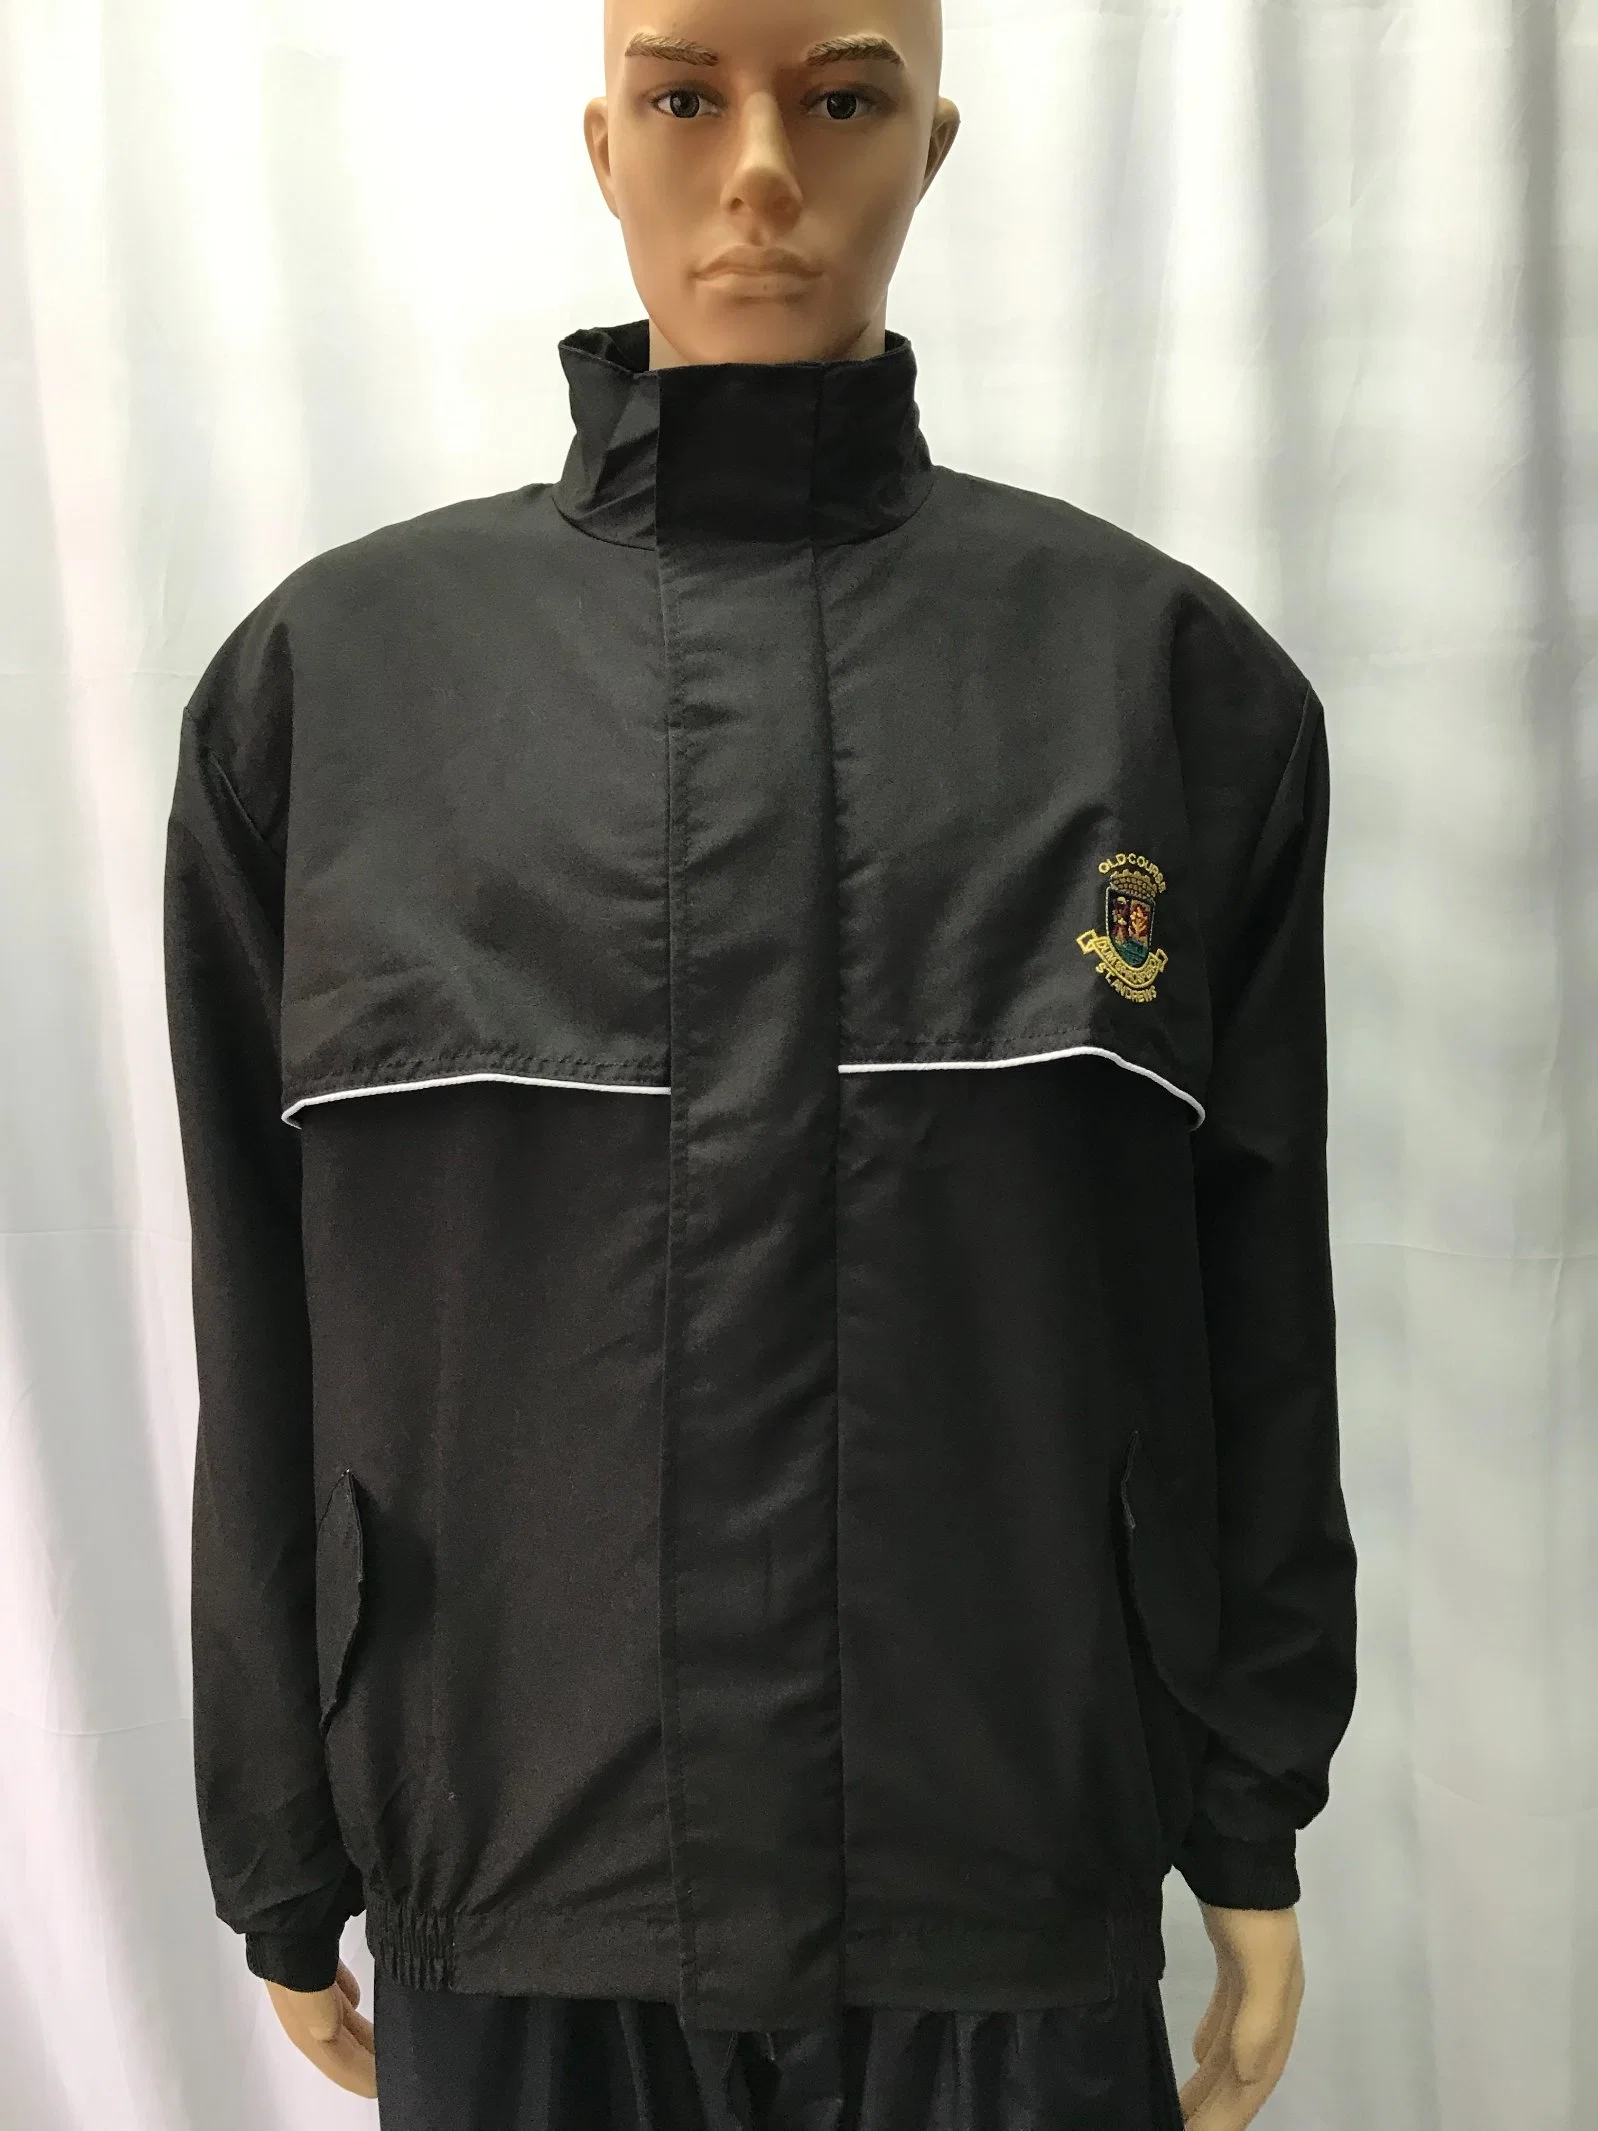 Chaquetas impermeables para hombre Outdoor Windbreaker chaqueta de golf personalizada Chaqueta deportiva con cremallera